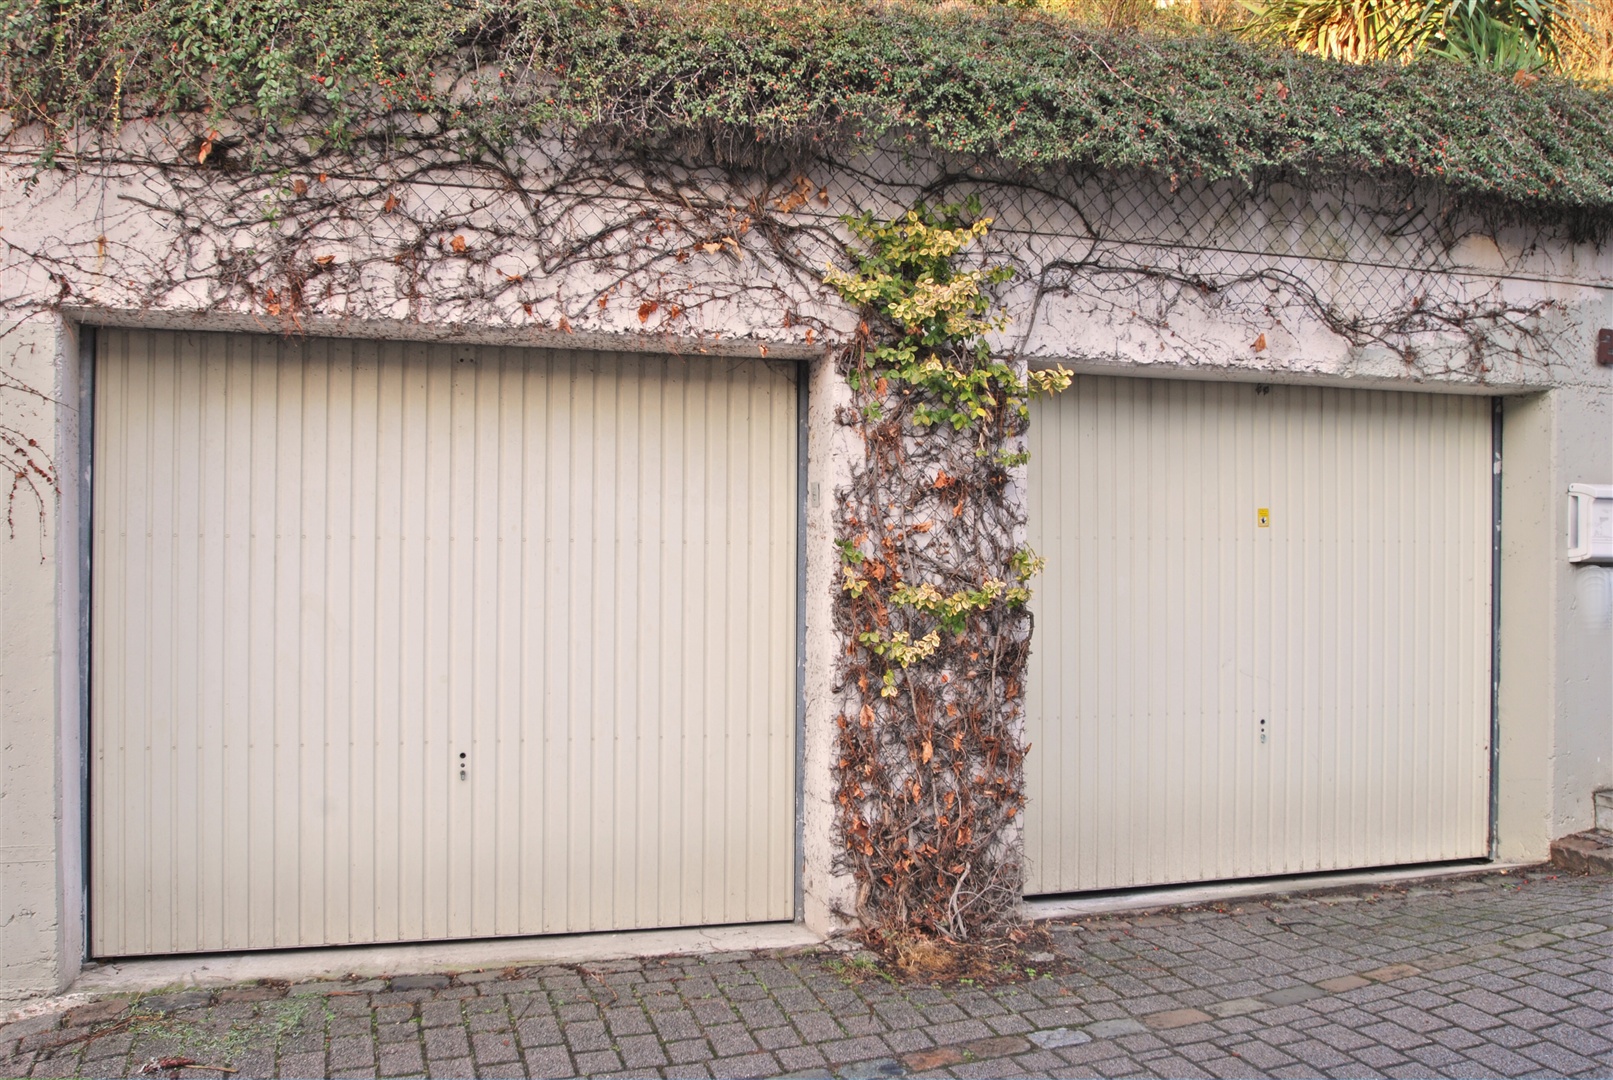 ihre eigene, aufwendig gebaute garagenanlage für 2 pkw, besonders wichtig in dieser wohnlage - Oliver Reifferscheid - Immobilienmakler Darmstadt